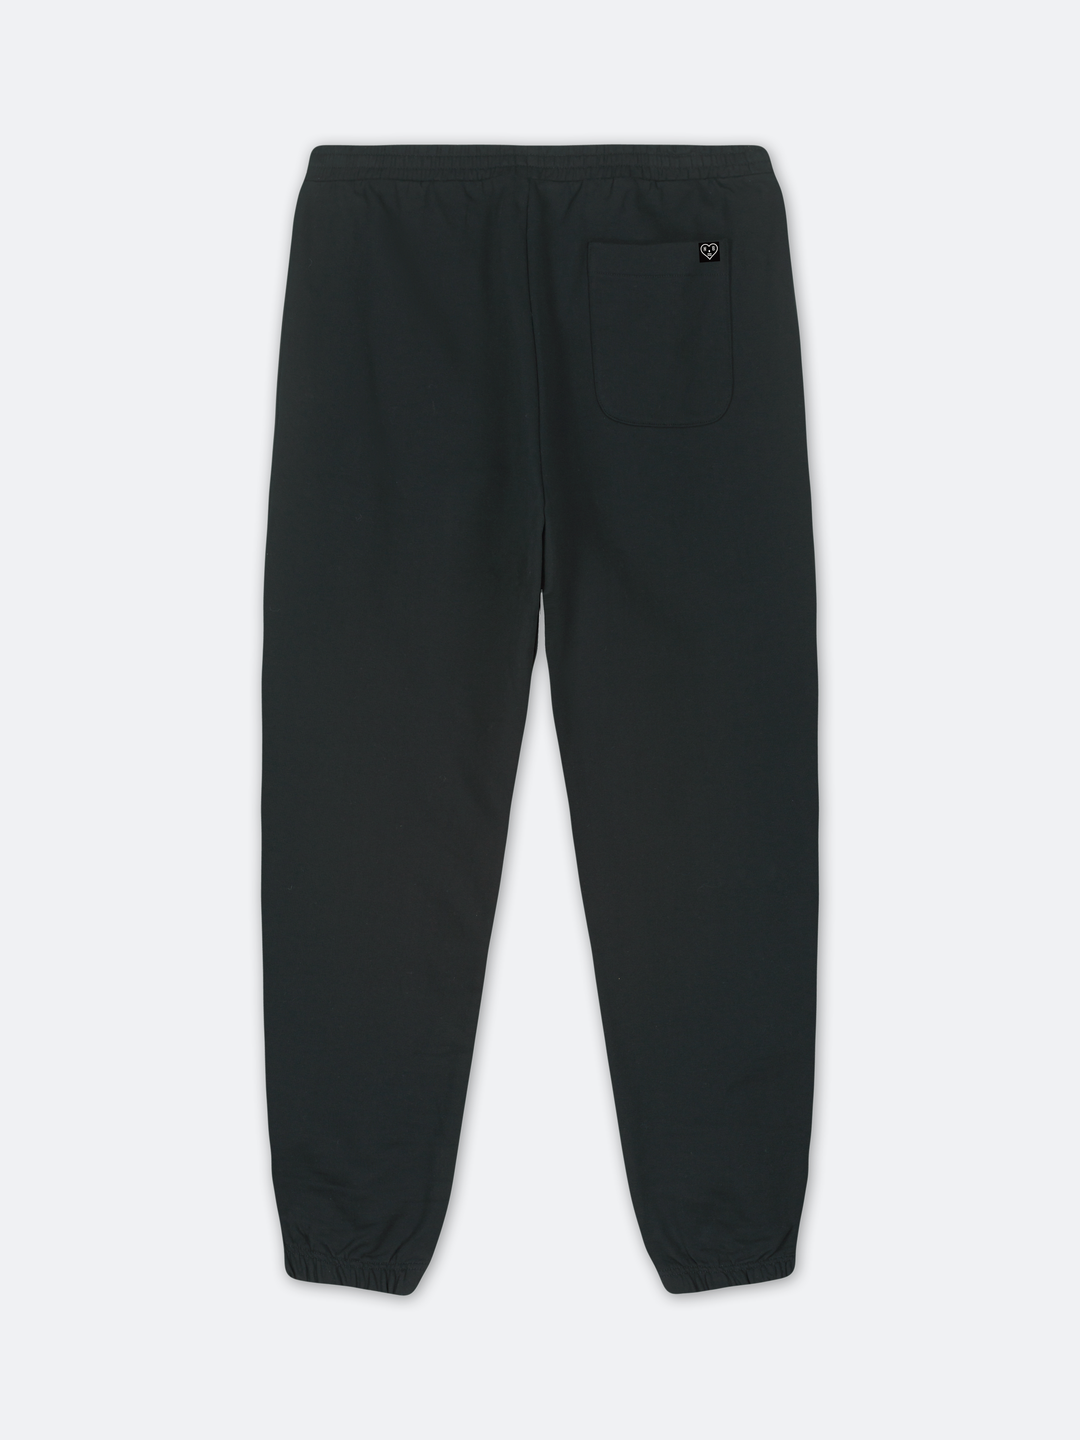 STENCIL SMALL PRESTIGE Sweat Pants (Black)